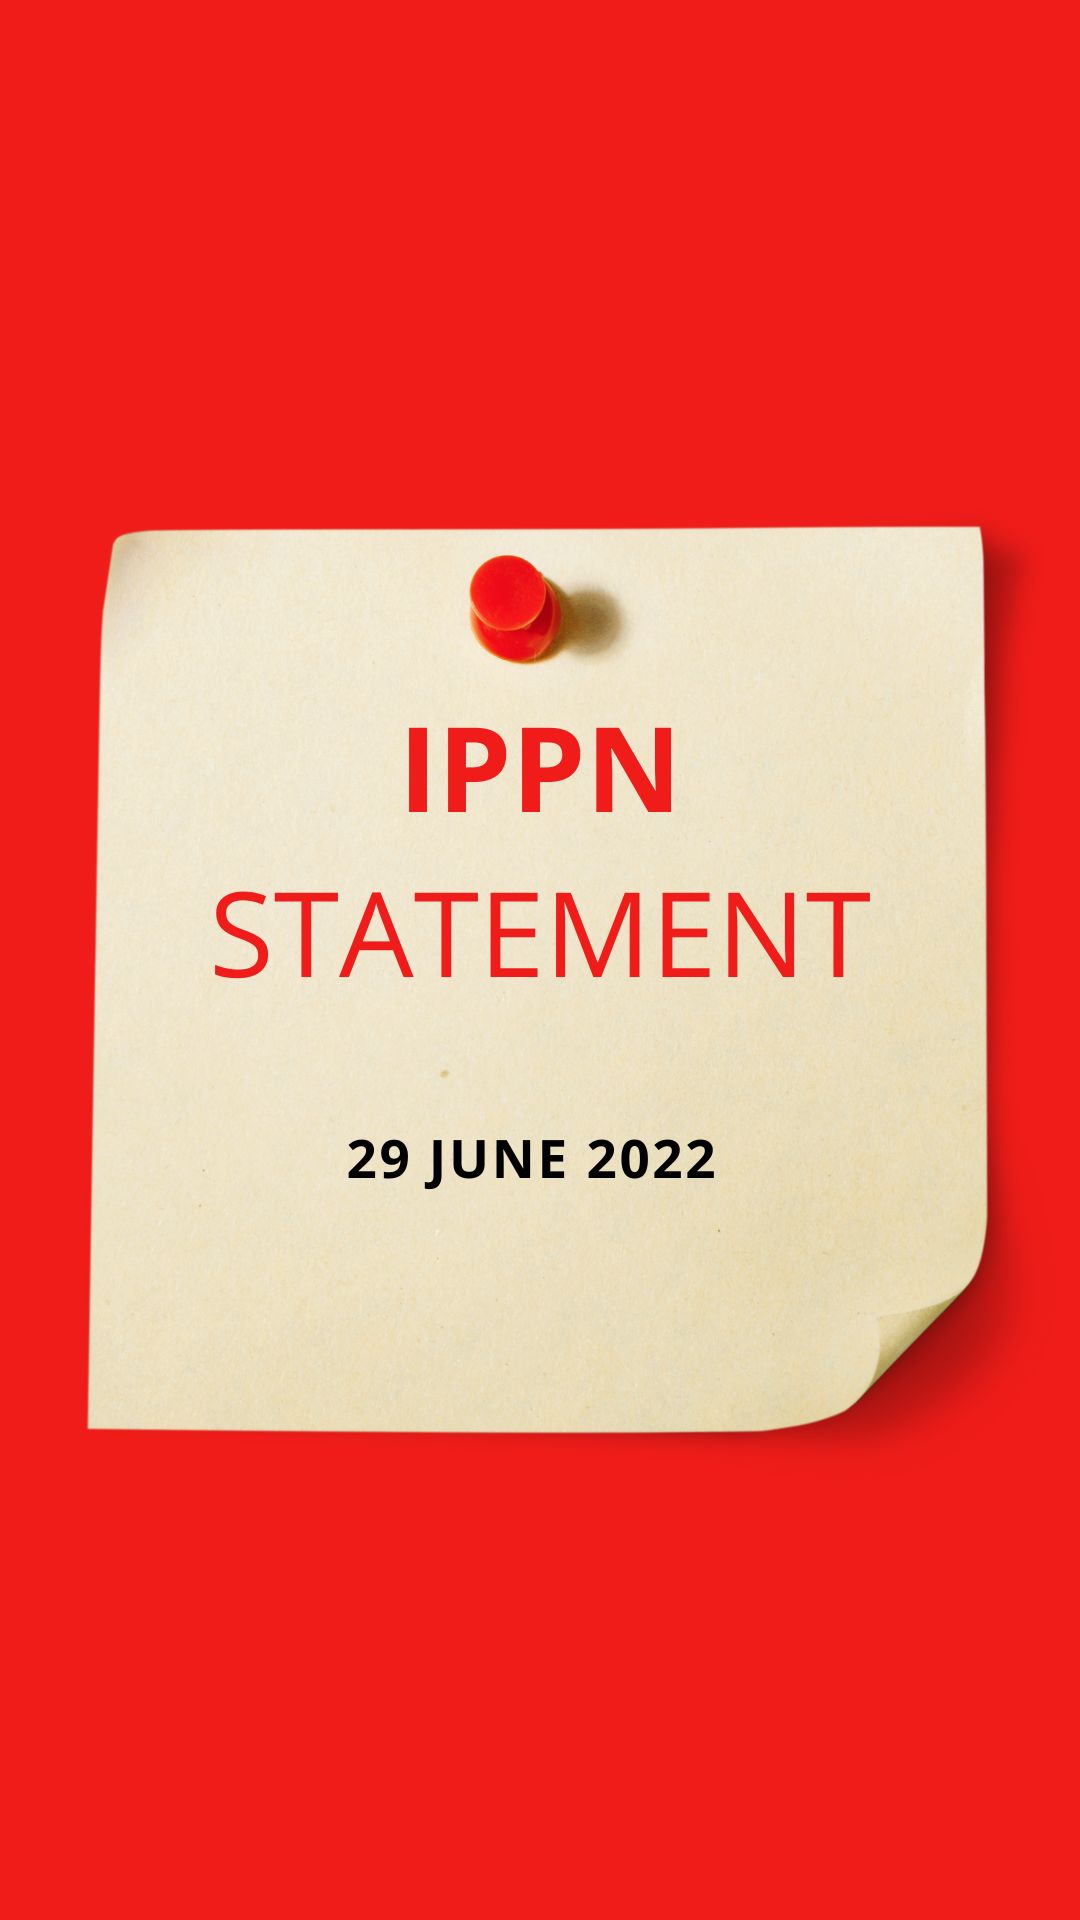 IPPN Statement